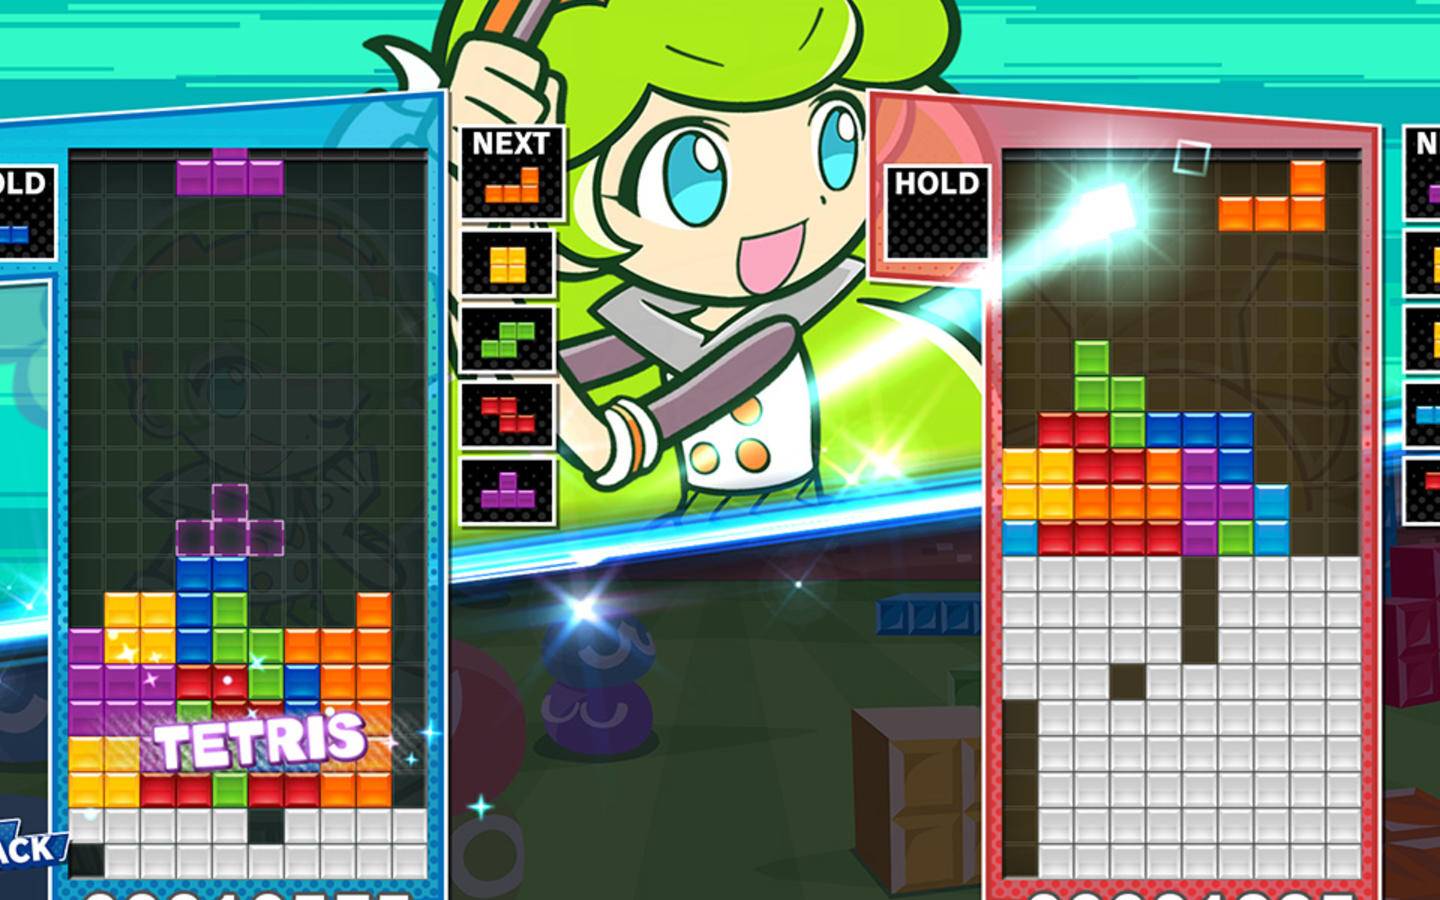 Análise: Puyo Puyo Tetris 2 (Multi): o retorno da mistura de dois